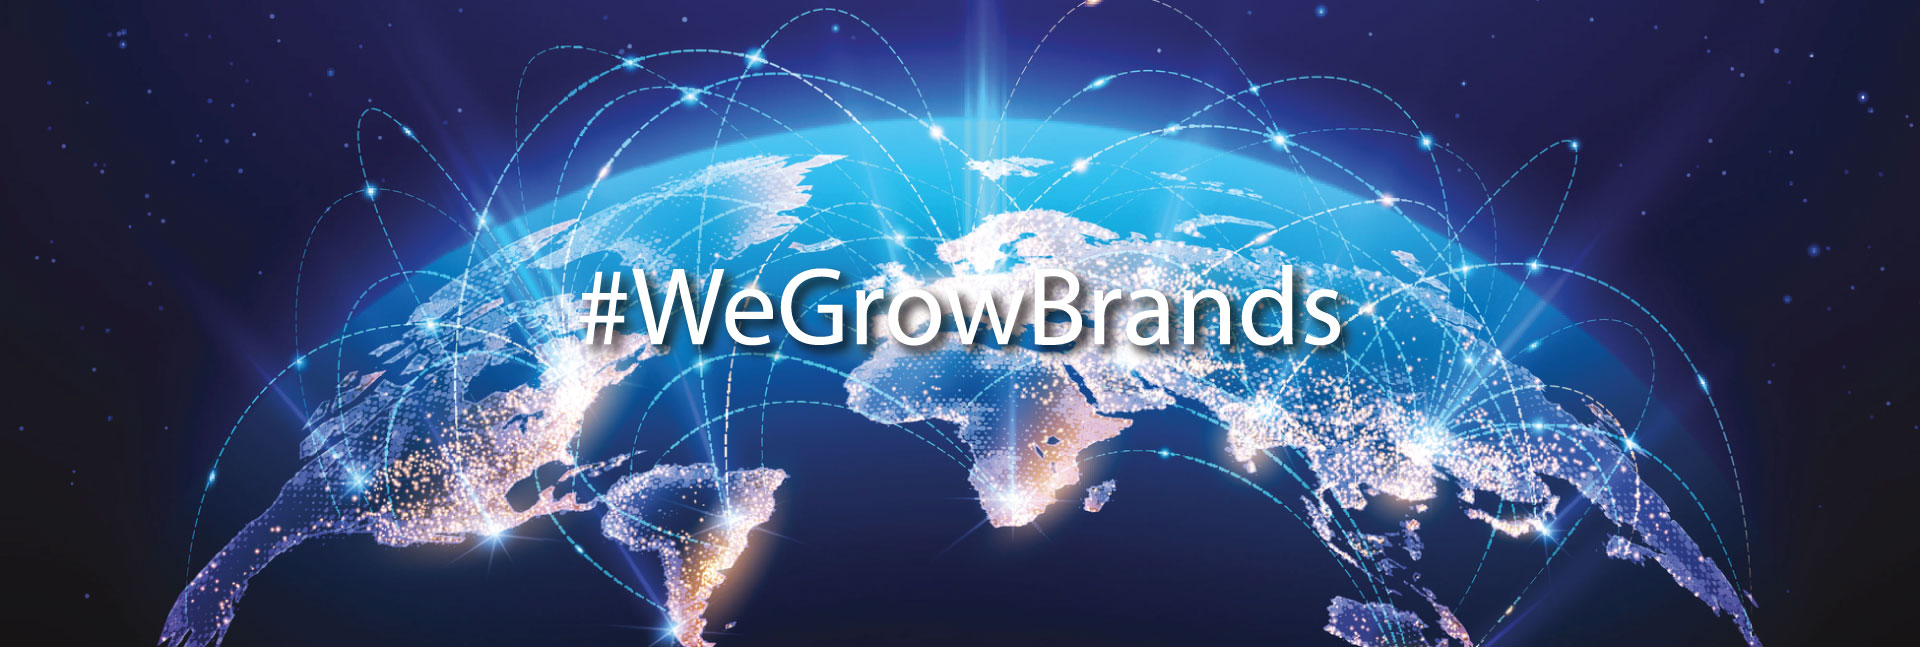 We Grow Brands